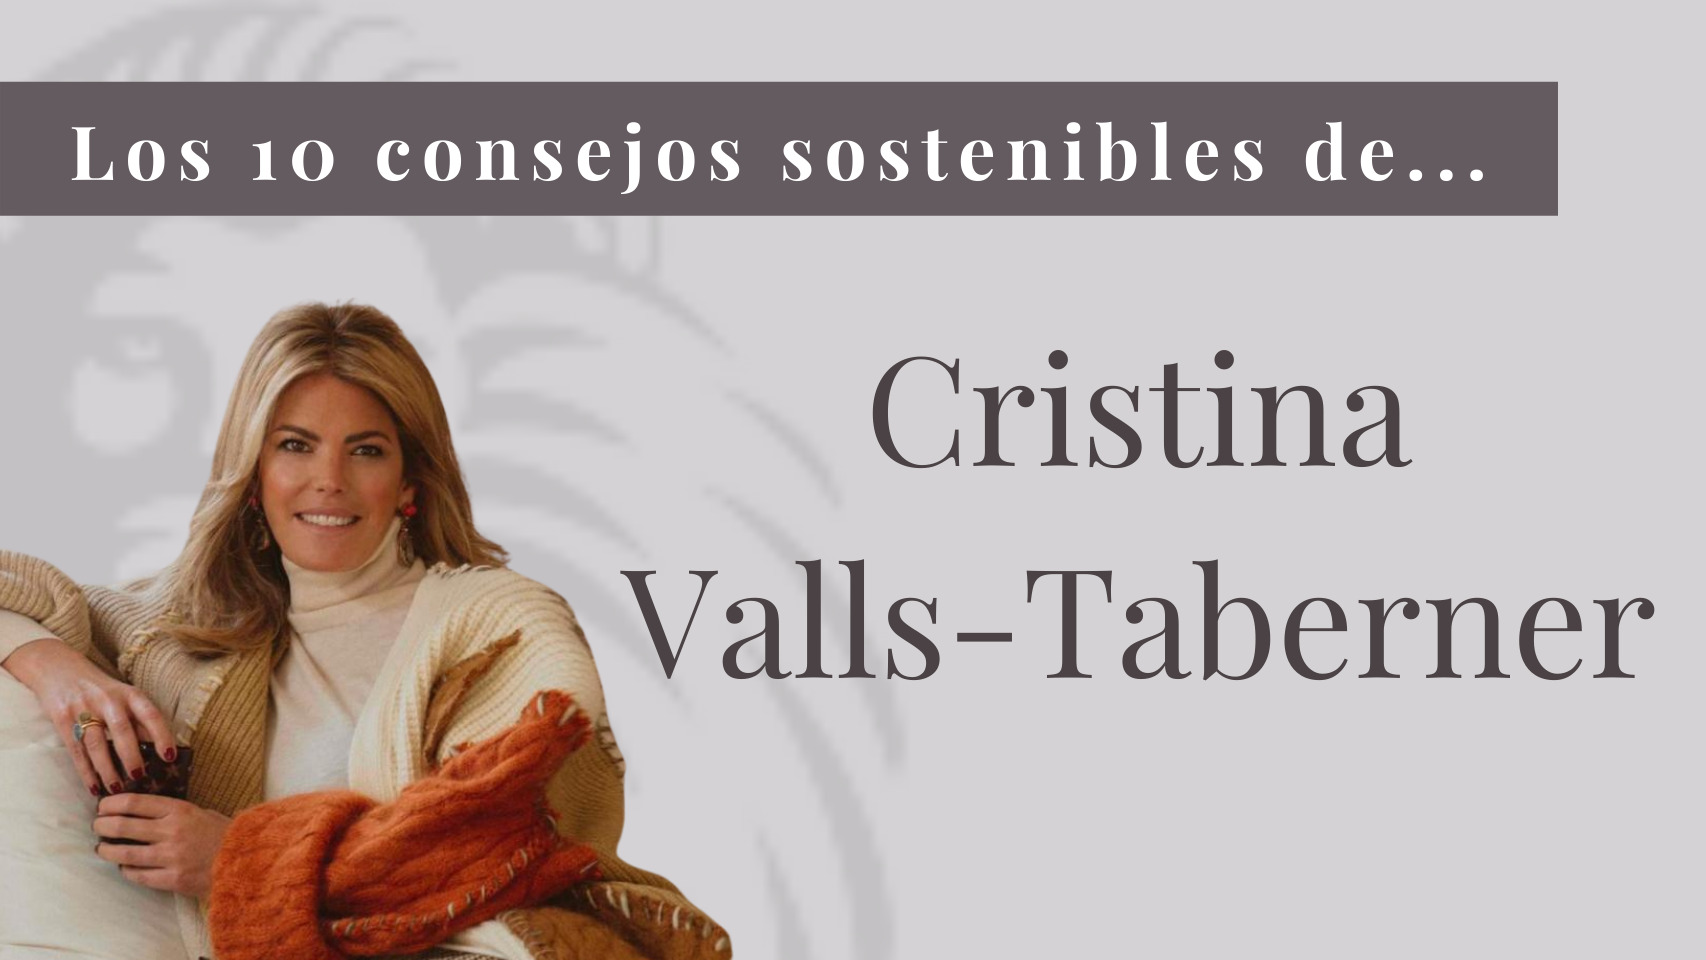 10 consejos sostenibles de Cristina Valls Taberner